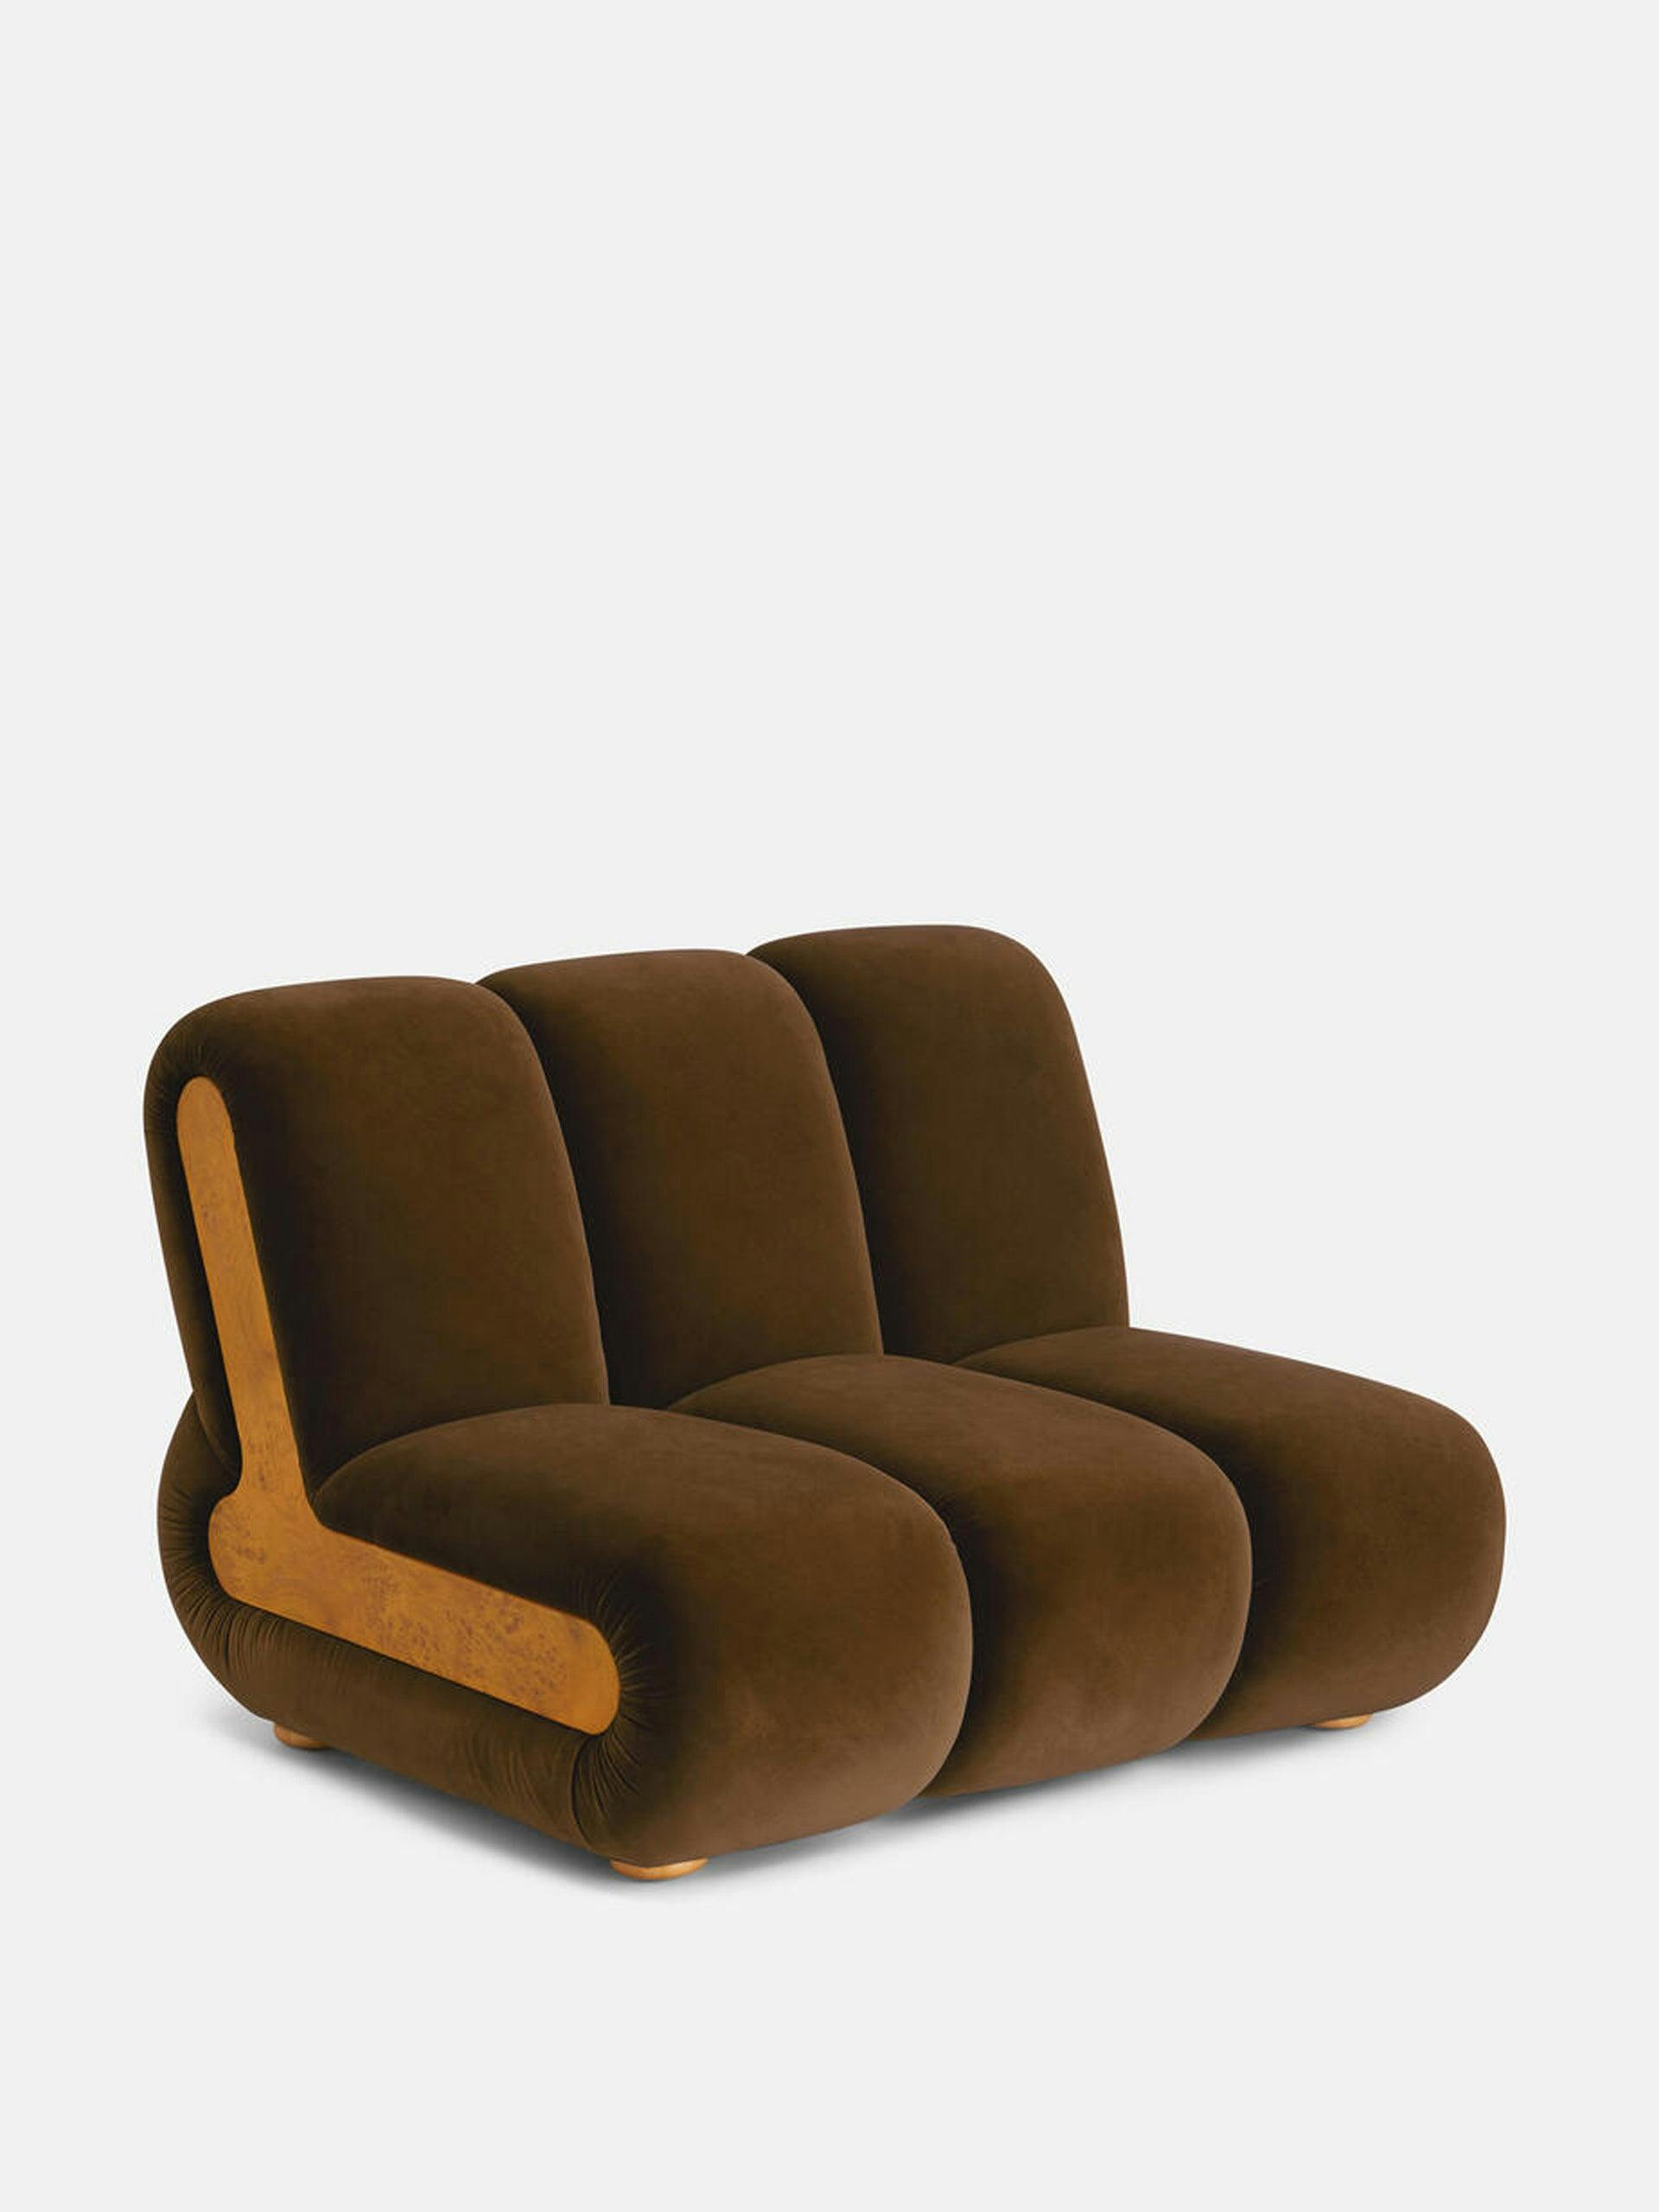 Noelle Modular armchair in velvet mustard